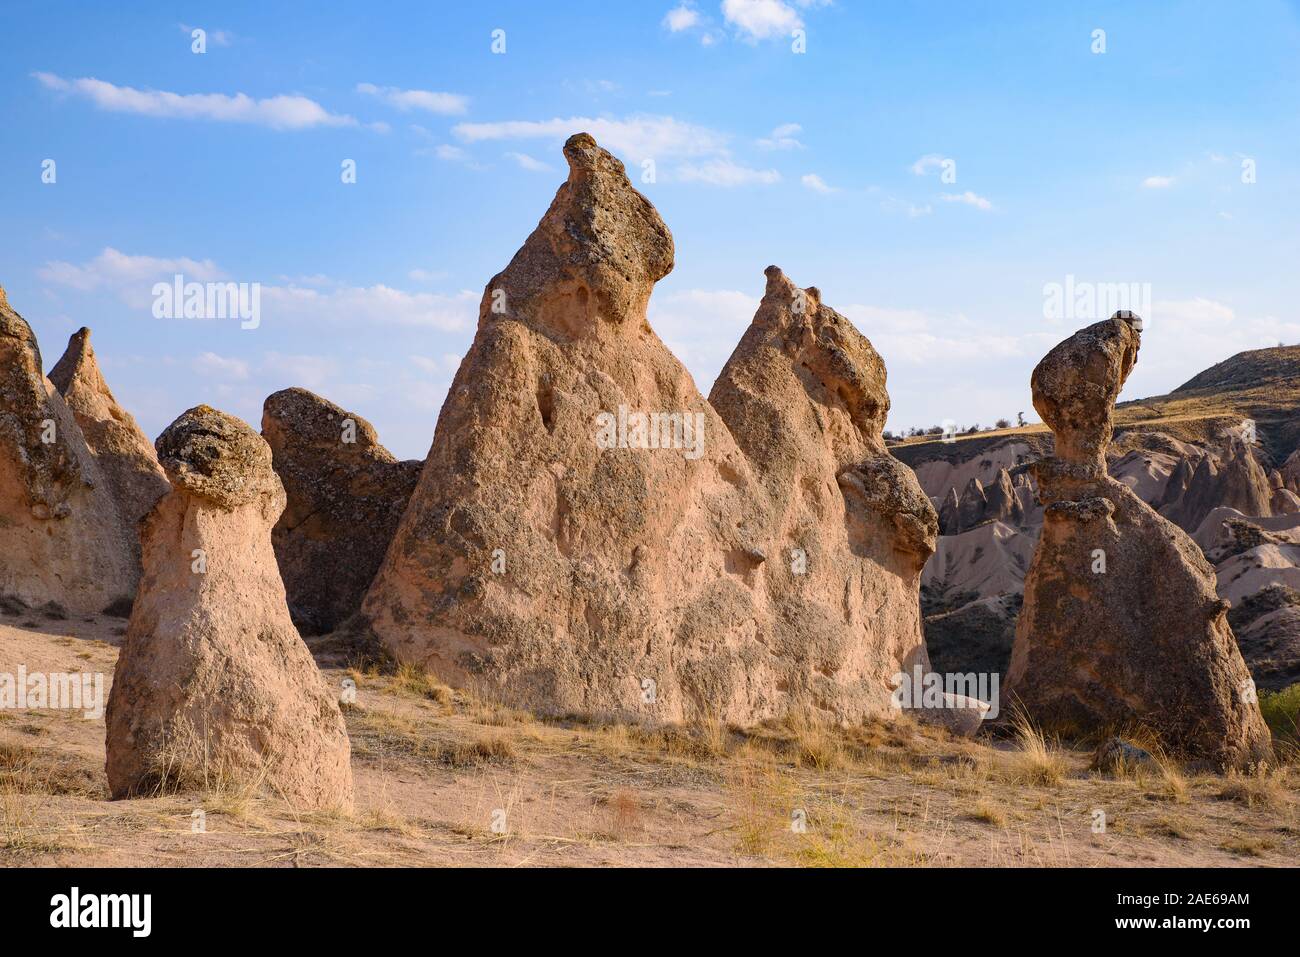 Vallée Devrent Vallée imaginaire /, une vallée pleine de formations rocheuses uniques dans la région de Cappadoce, Turquie Banque D'Images